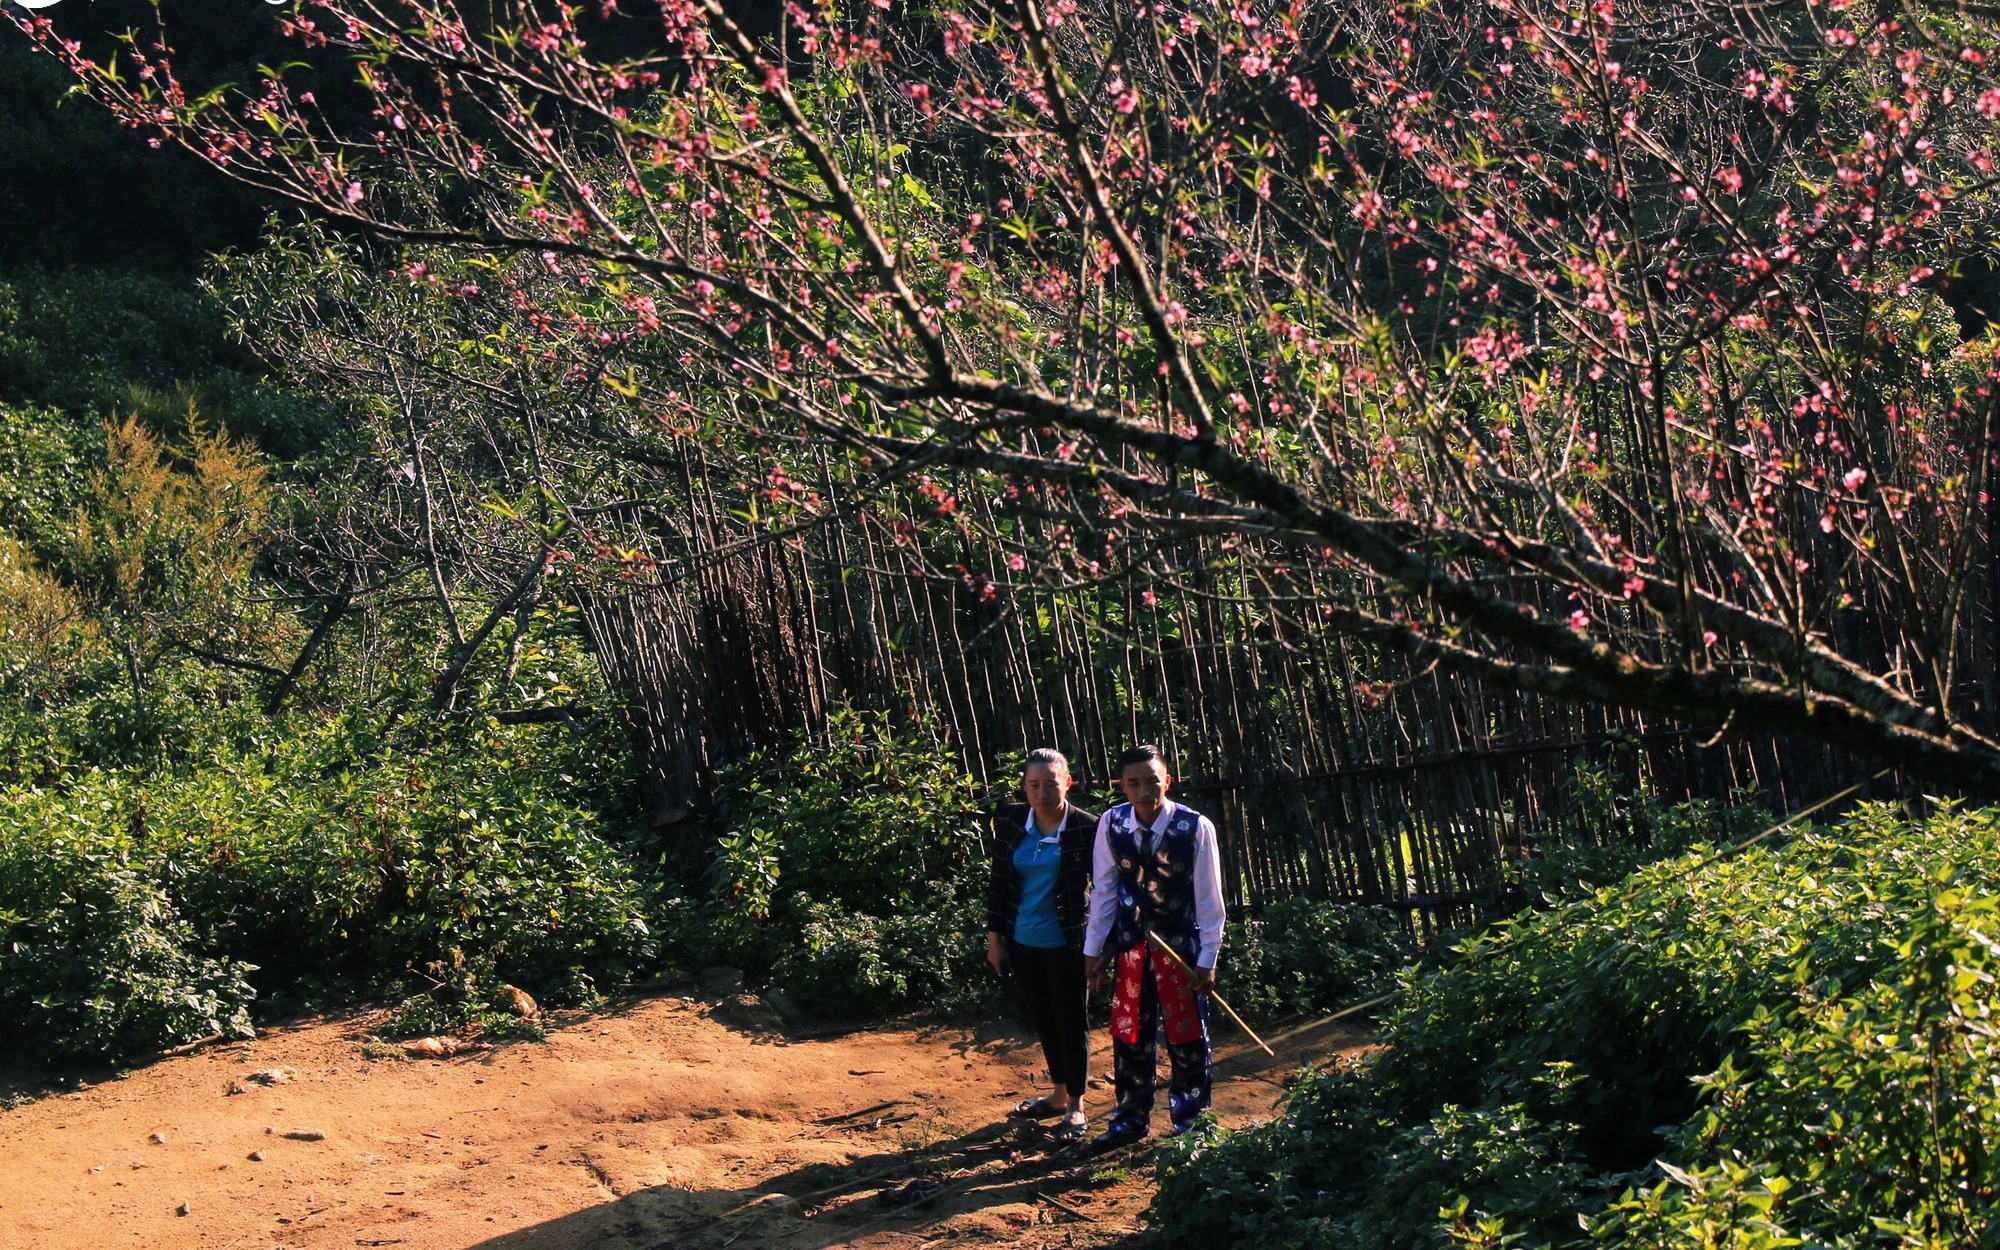 Đào cổ thụ nở rộ trong biển mây bồng bềnh trên đỉnh một ngọn núi cao ở một huyện của Nghệ An